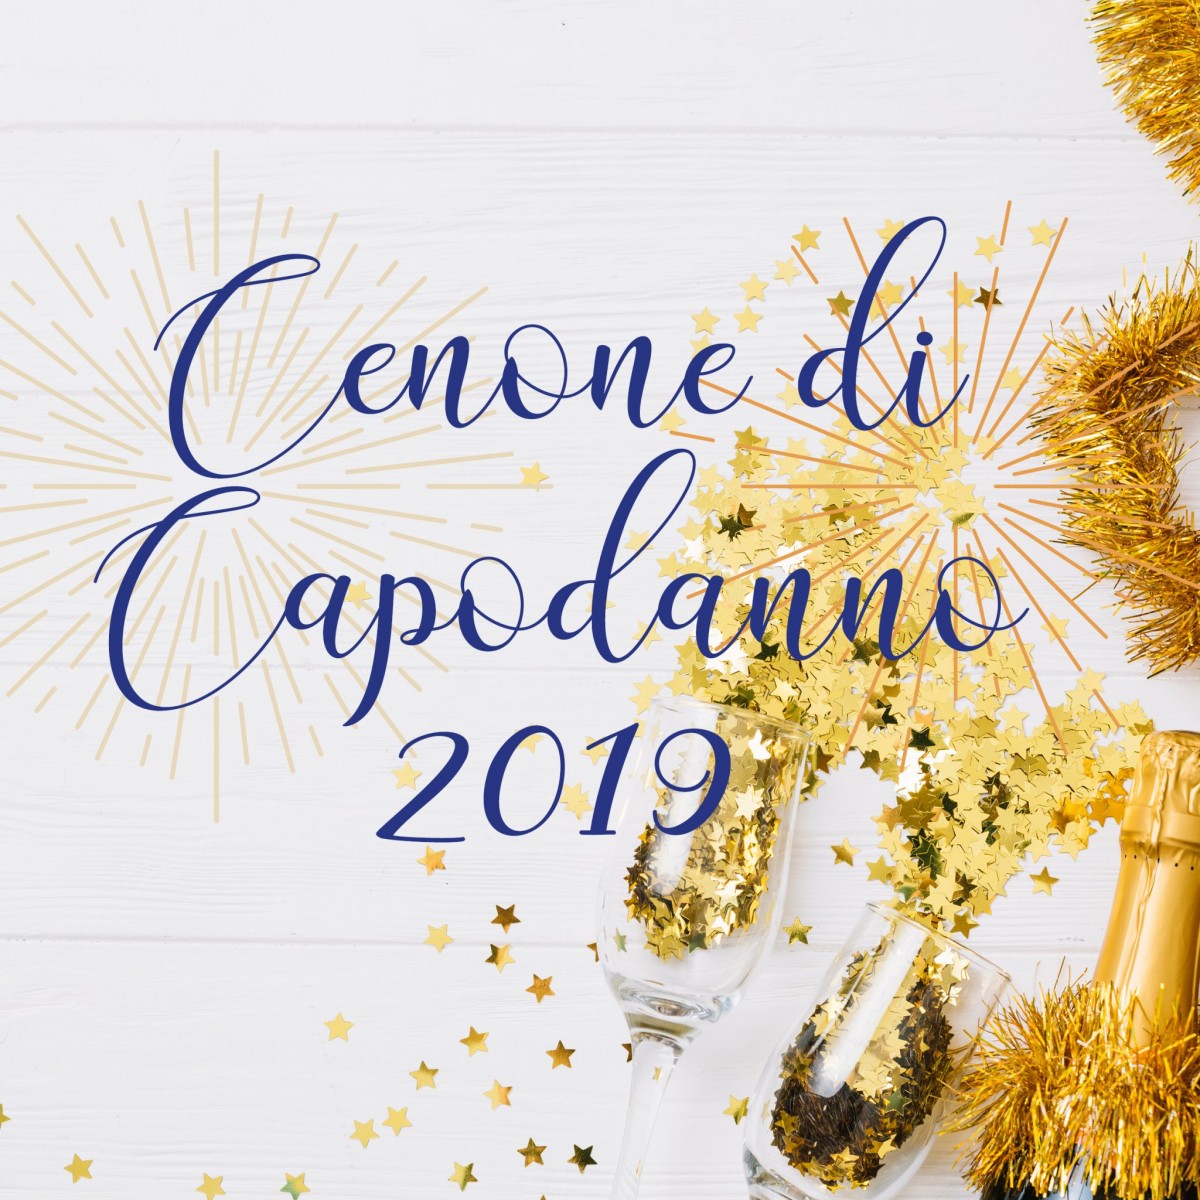 sito-cenone-capodanno-2019